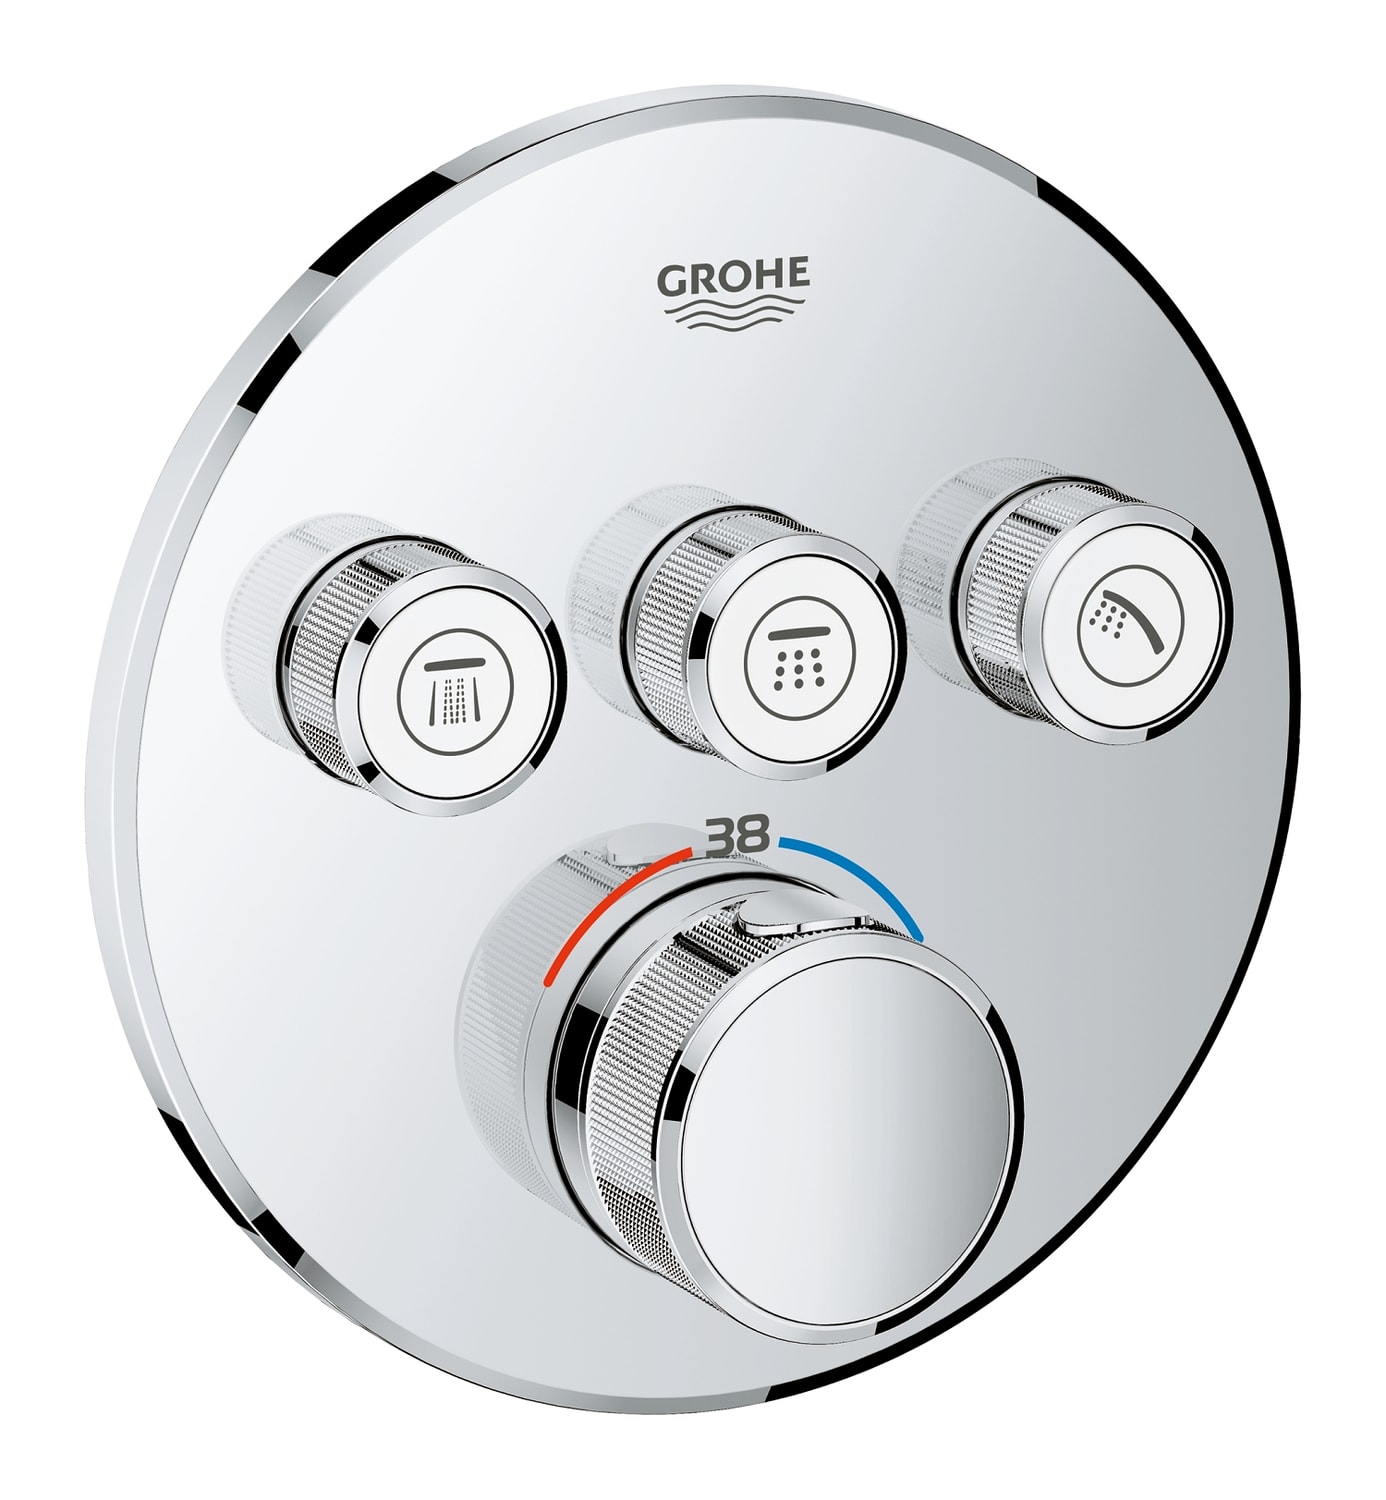 GROHE Grohtherm SmartControl - podtynkowa bateria termostatyczna do obsługi trzech wyjść wody 29121000 .